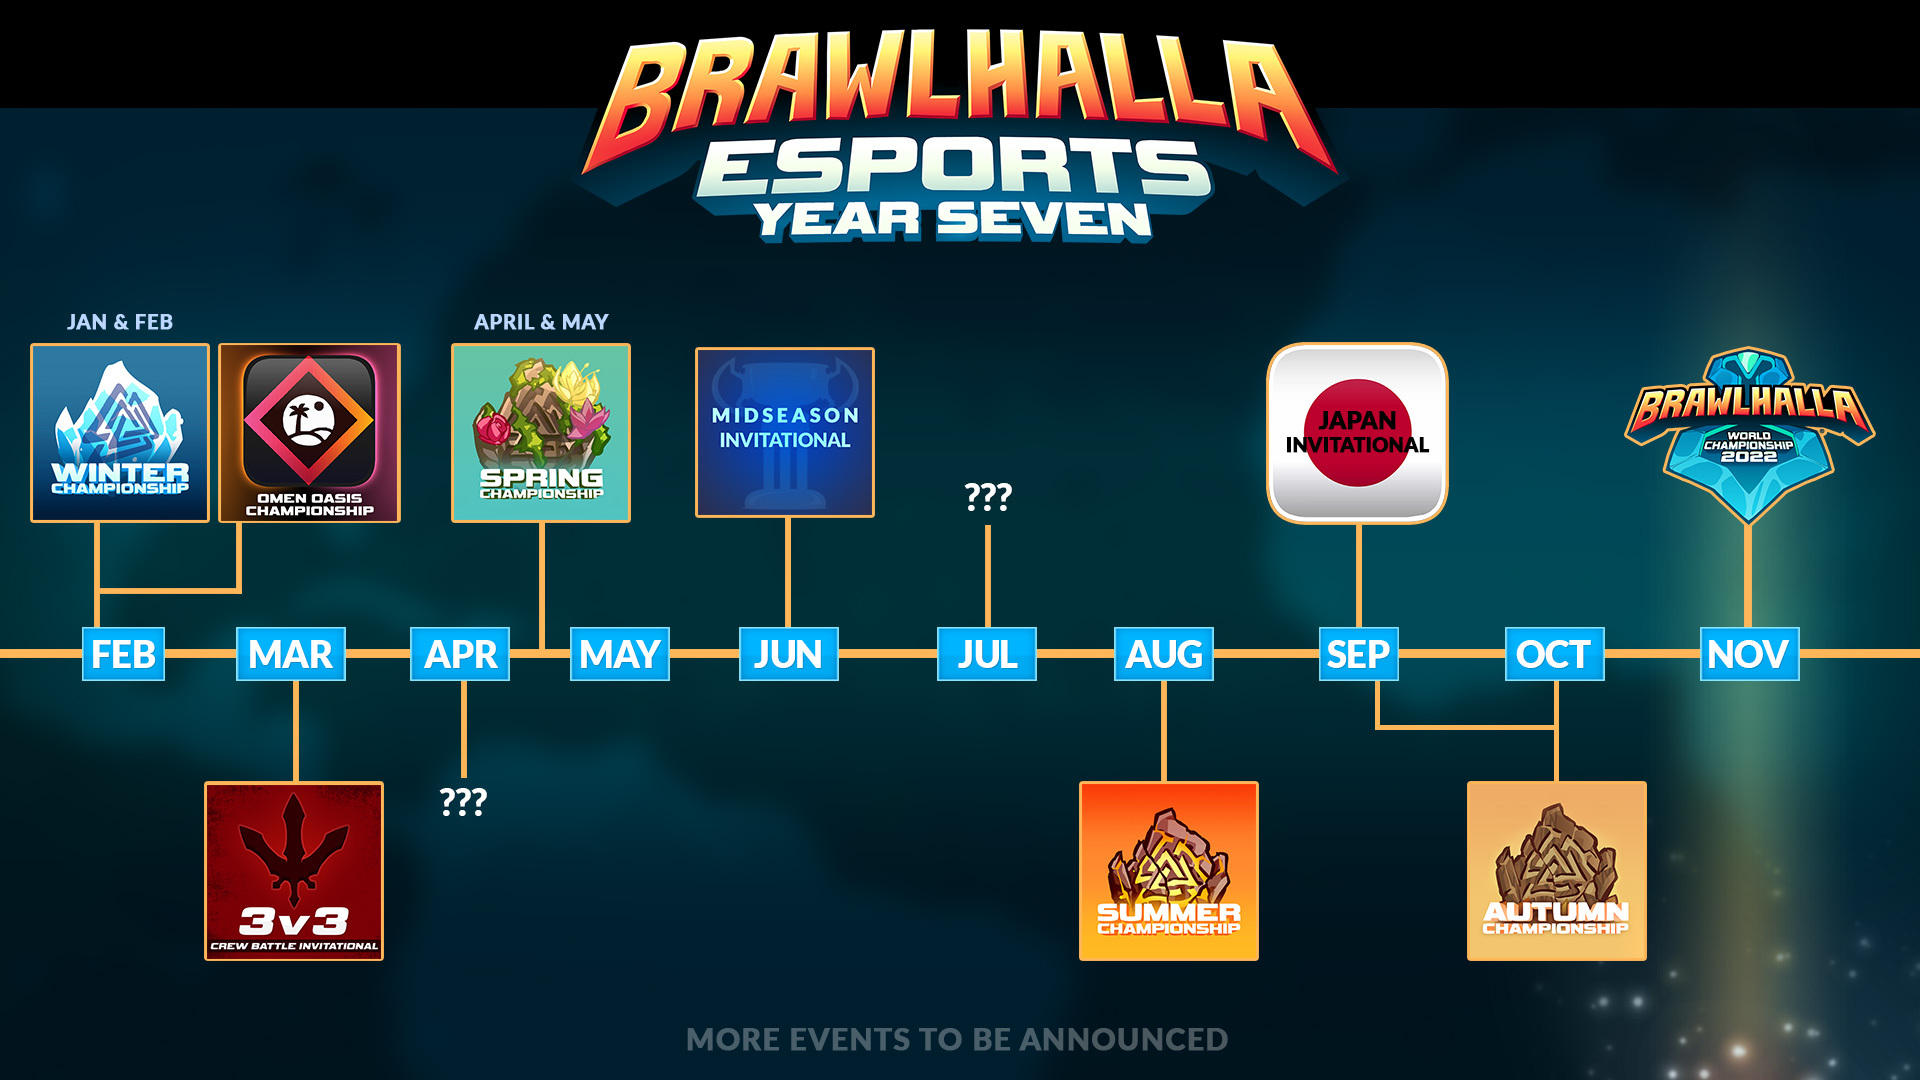 Brawlhalla terá a maior premiação de um campeonato de fighting game em